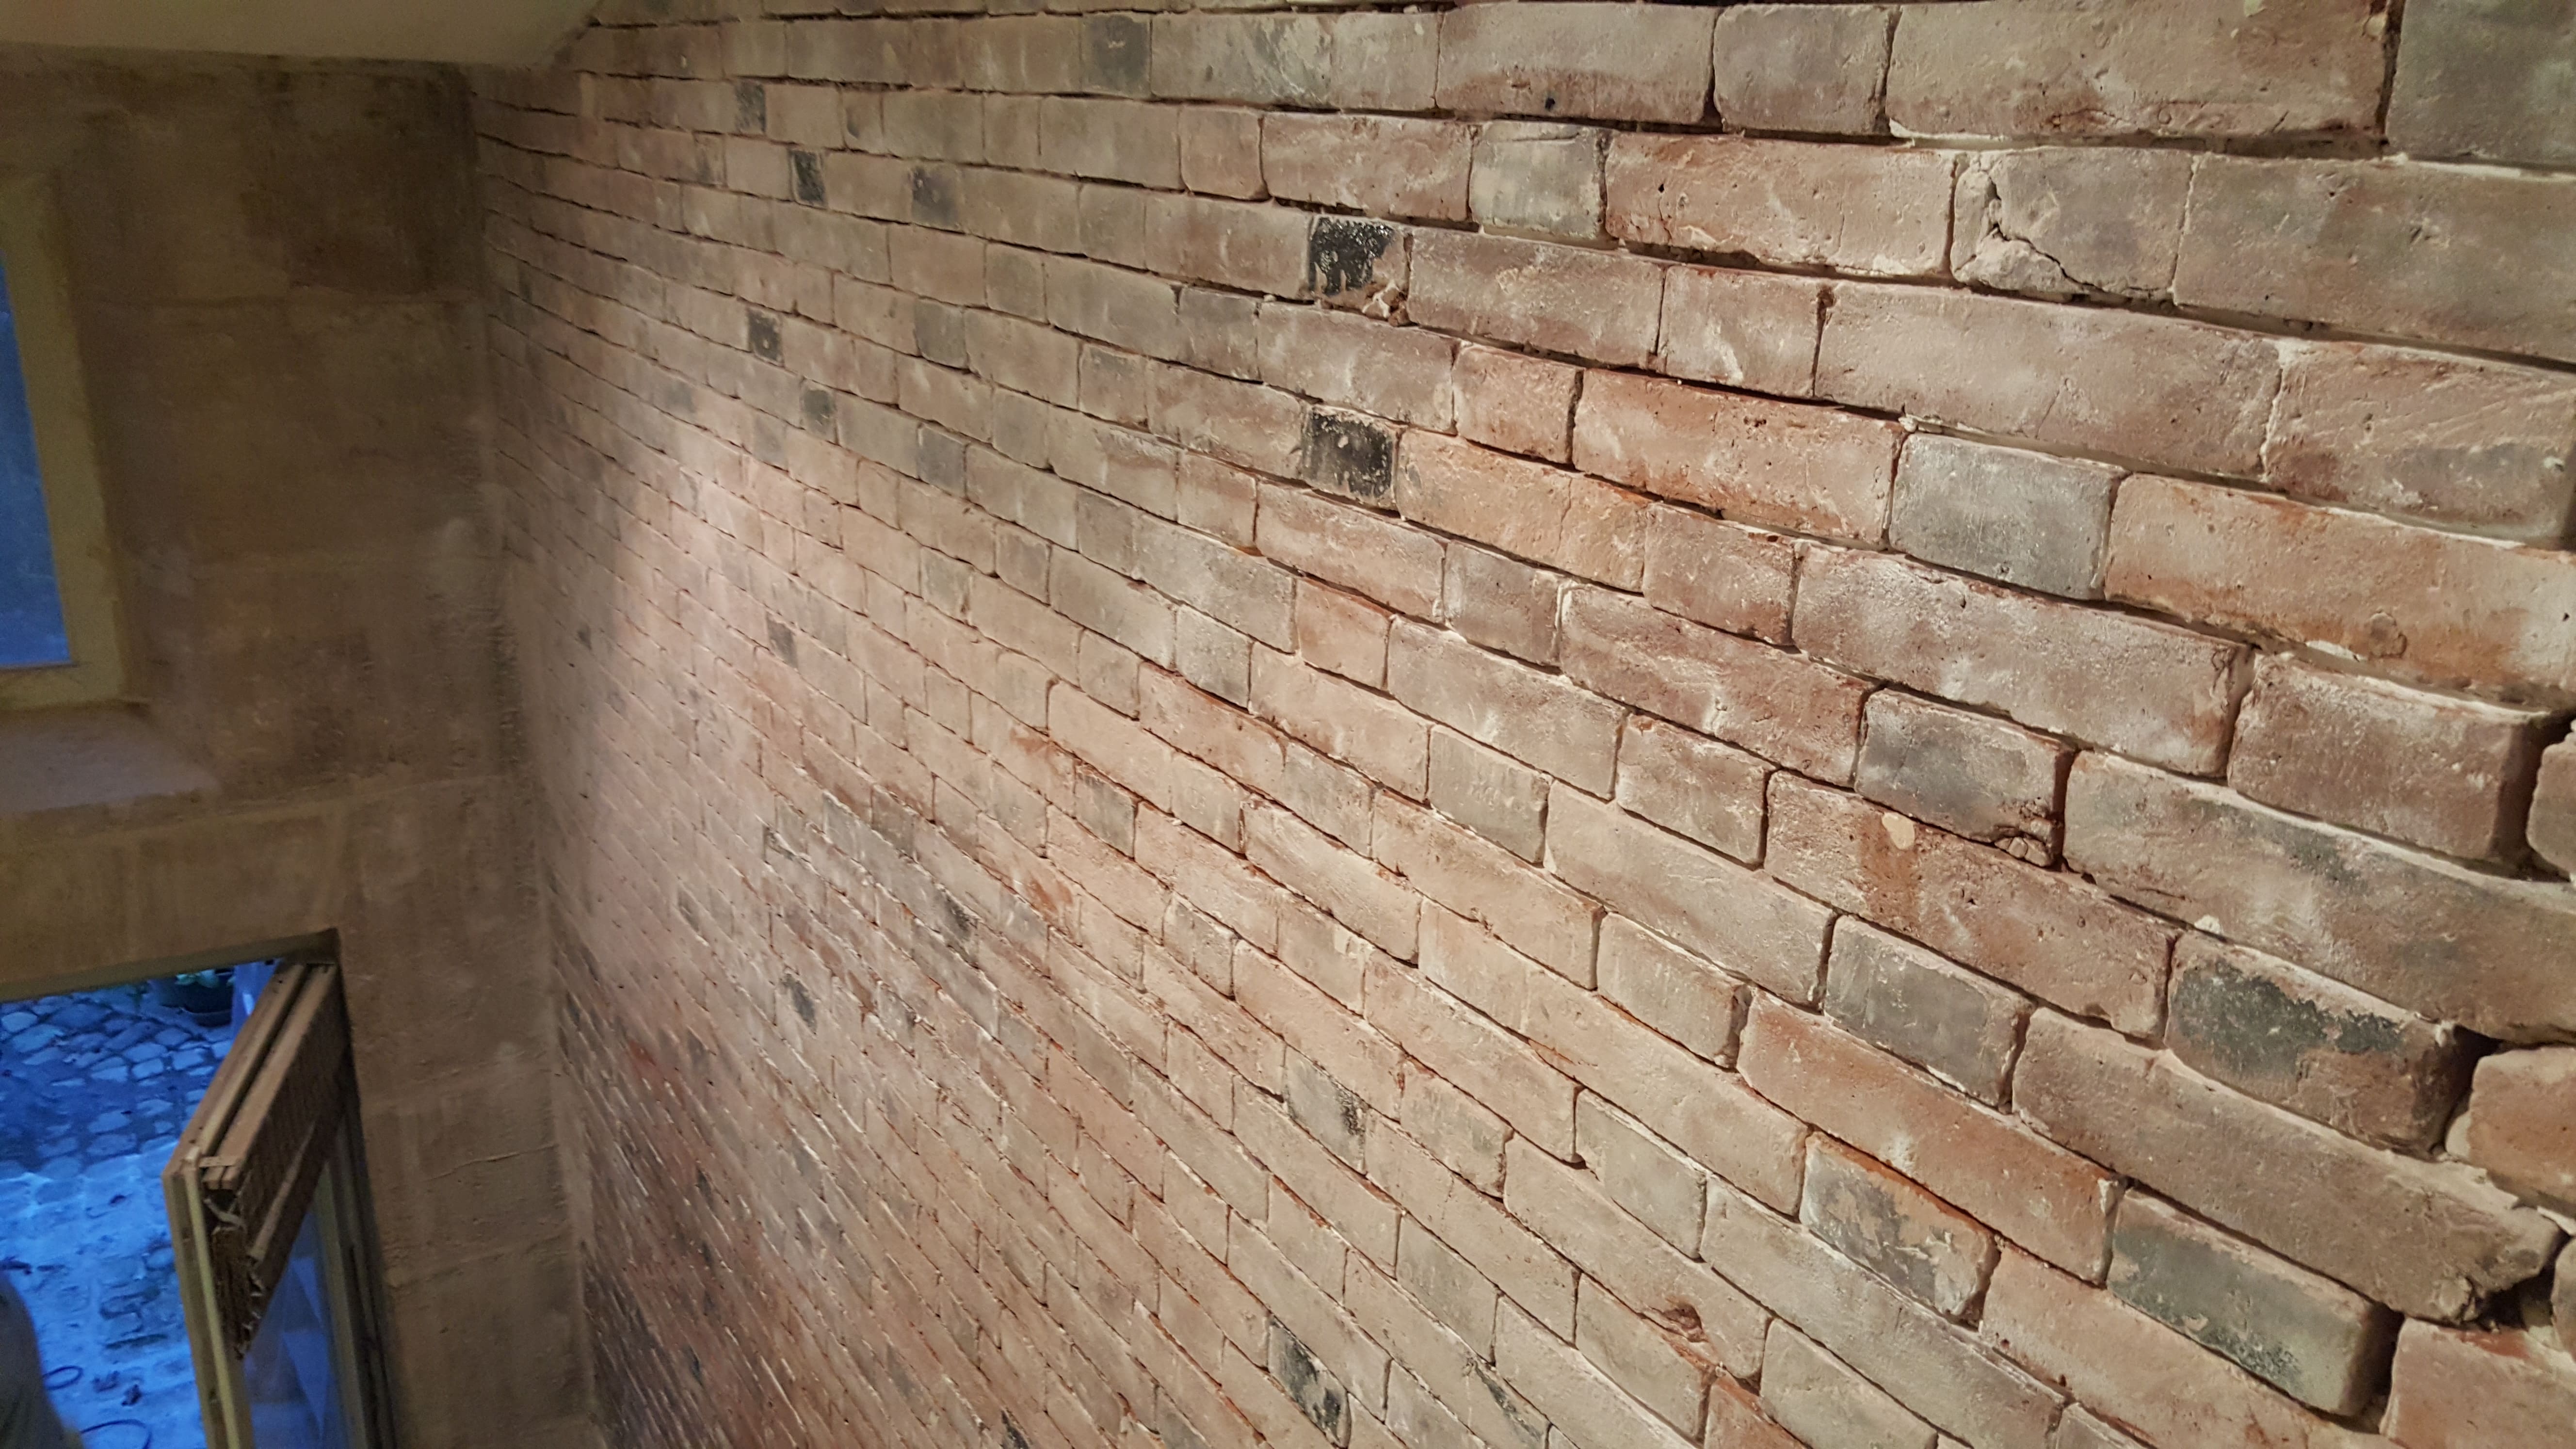 travaux-de-renovation-mur-de-brique-1-nettoyage-detachage-et-retapage-des-joints-societe-texas-batiment-min